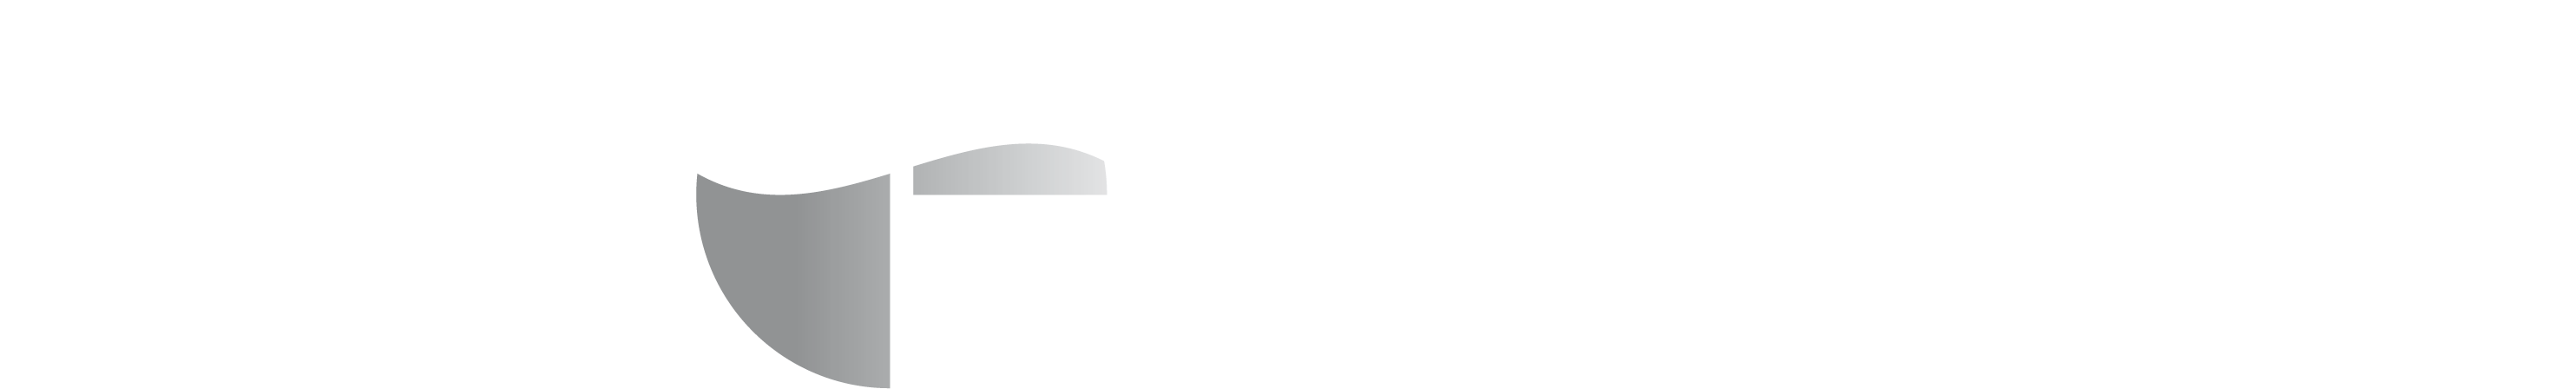 GCM_Logo_E-zorg_CMYK_WIT2